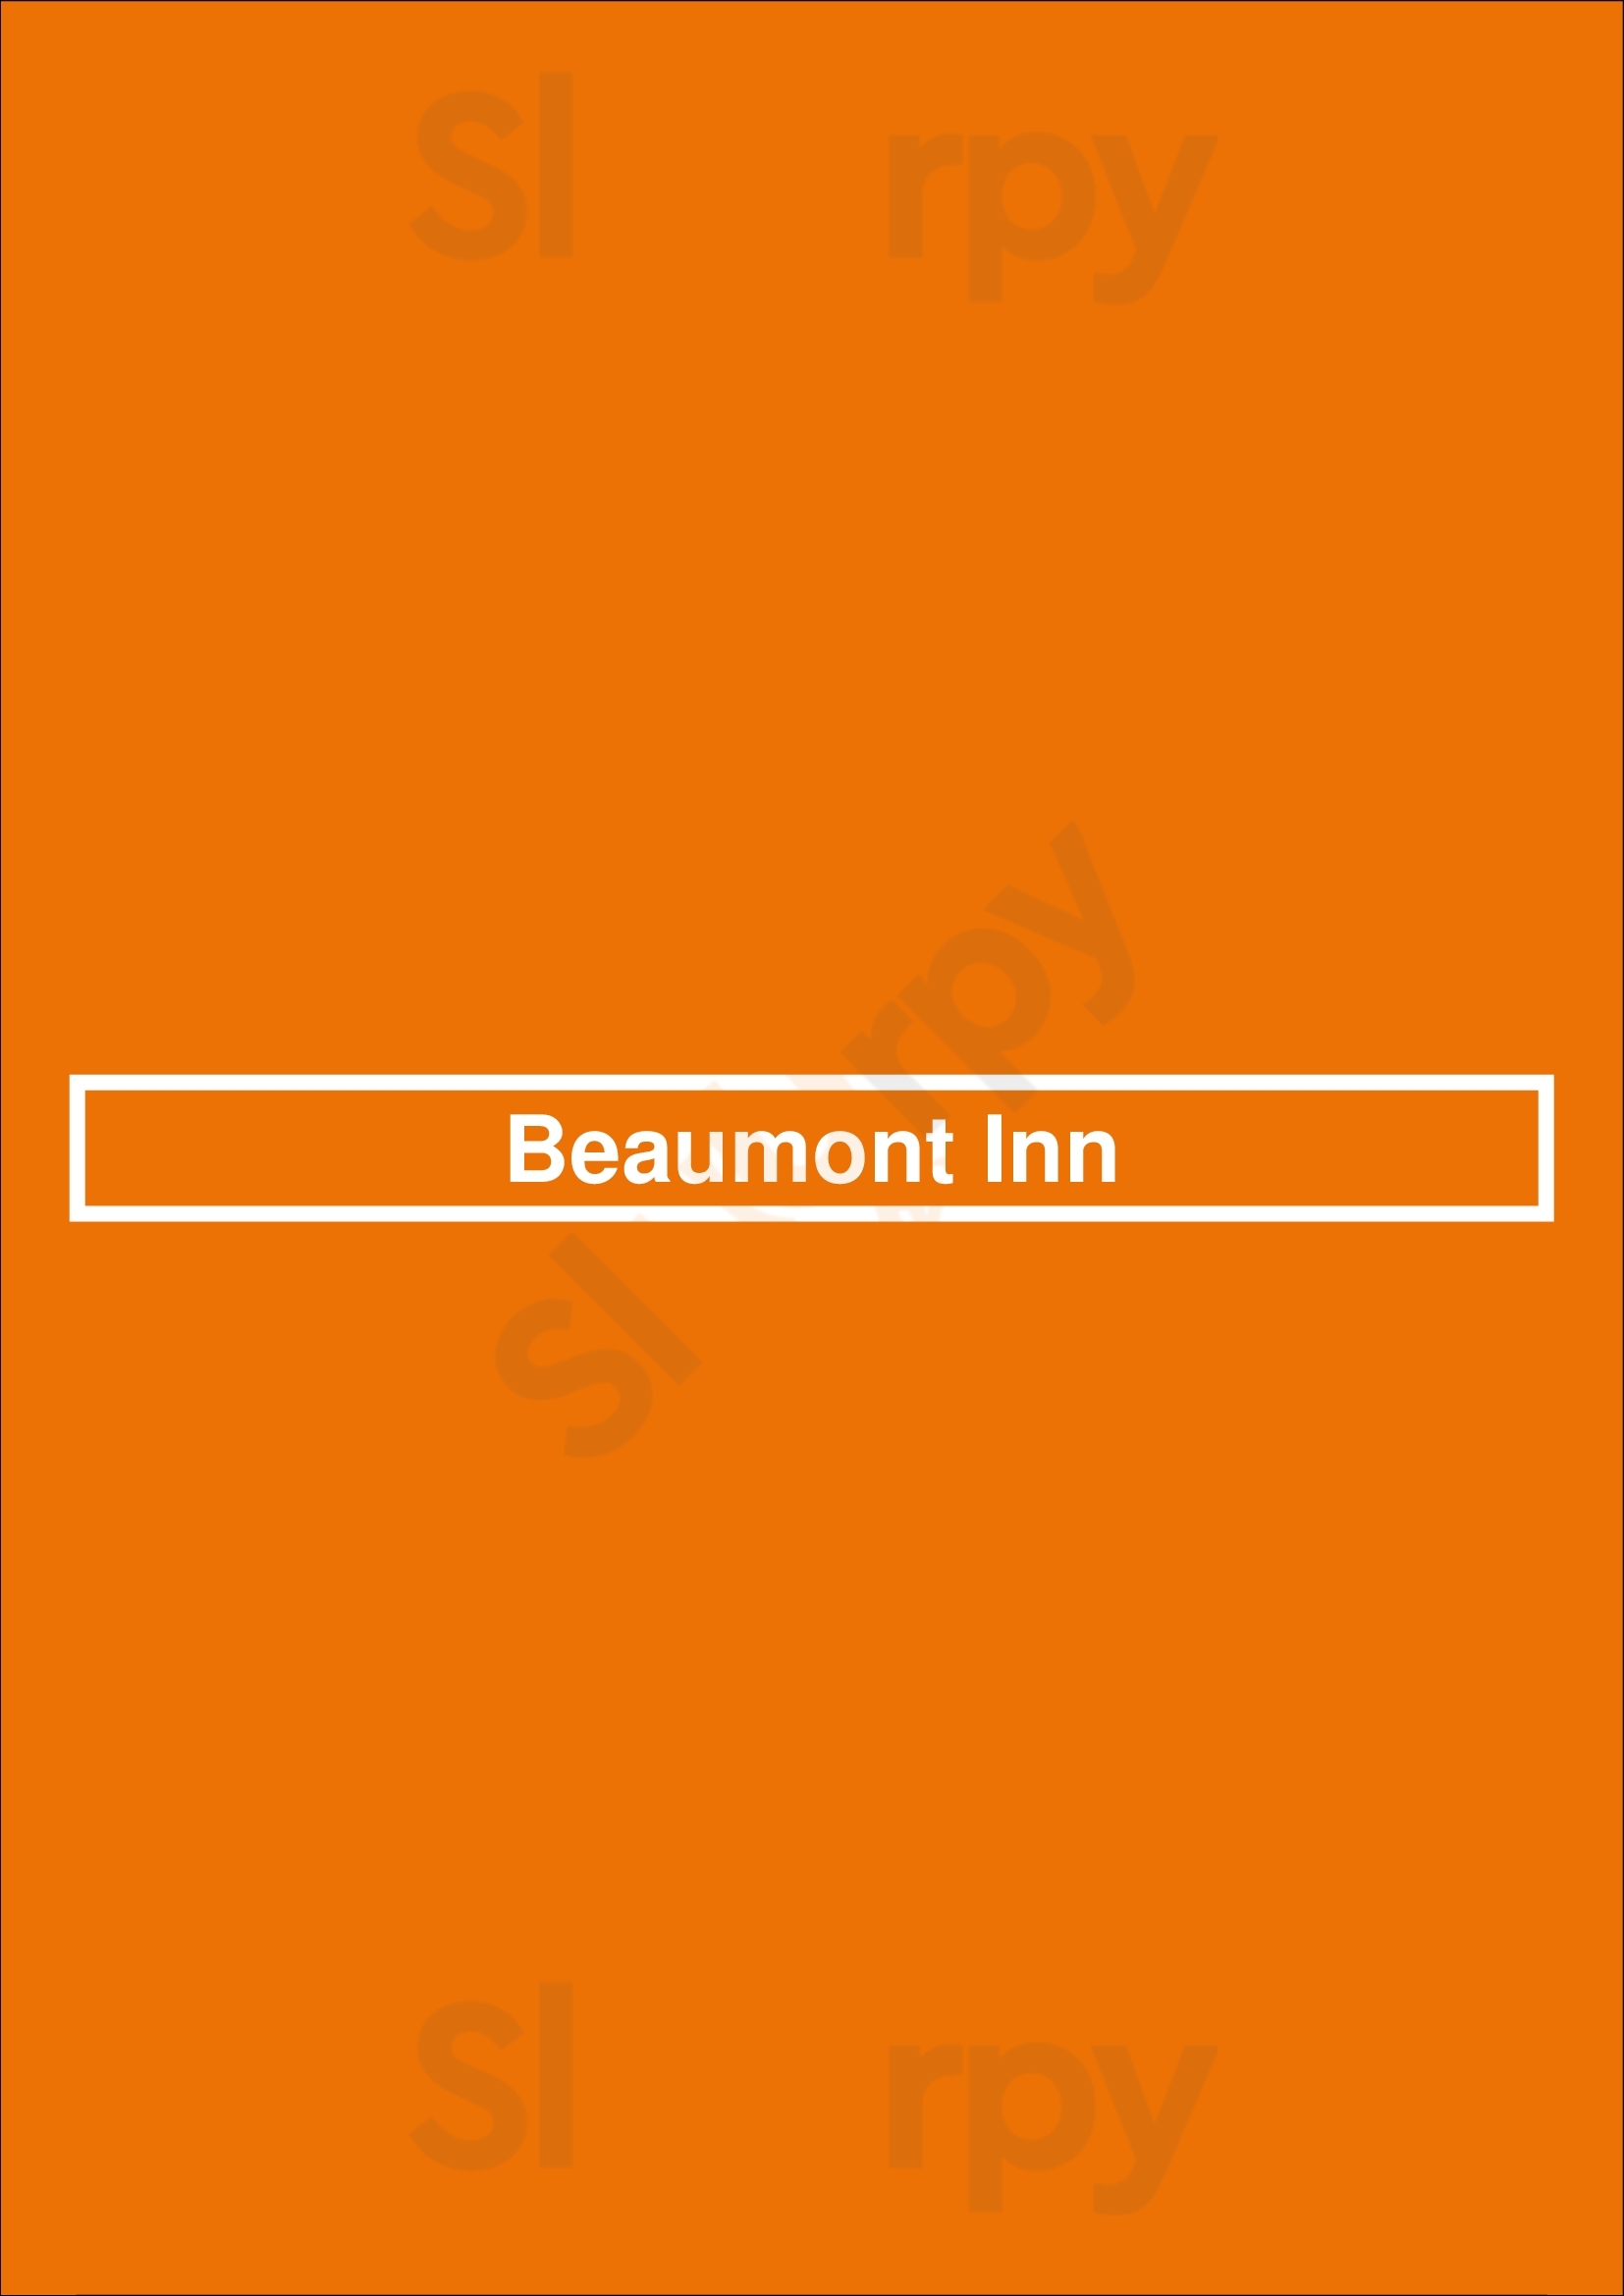 Beaumont Inn Dallas Menu - 1